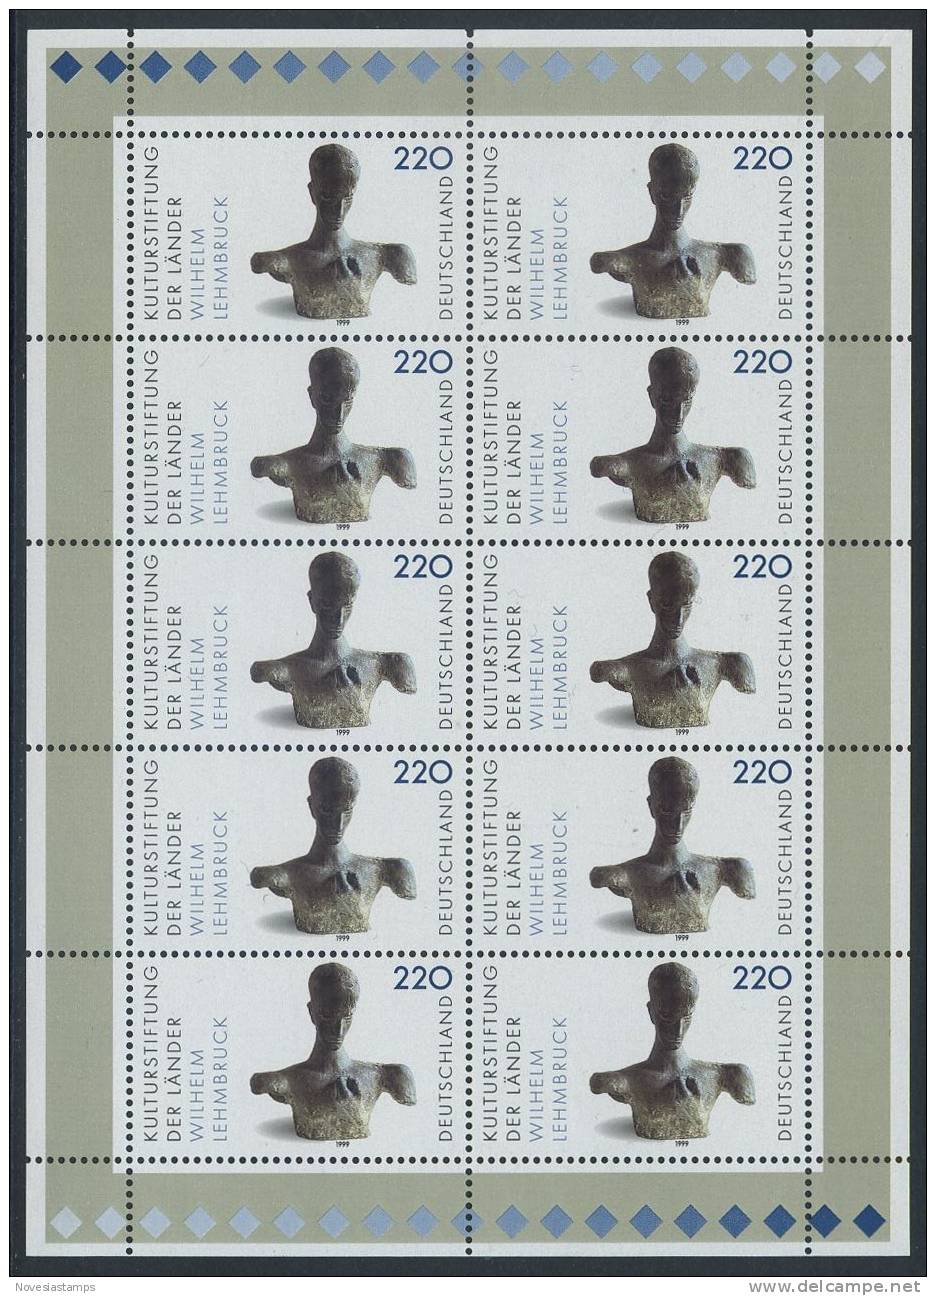 !a! GERMANY 1999 Mi. 2064 MNH SHEET(10) -Artworks - 1991-2000